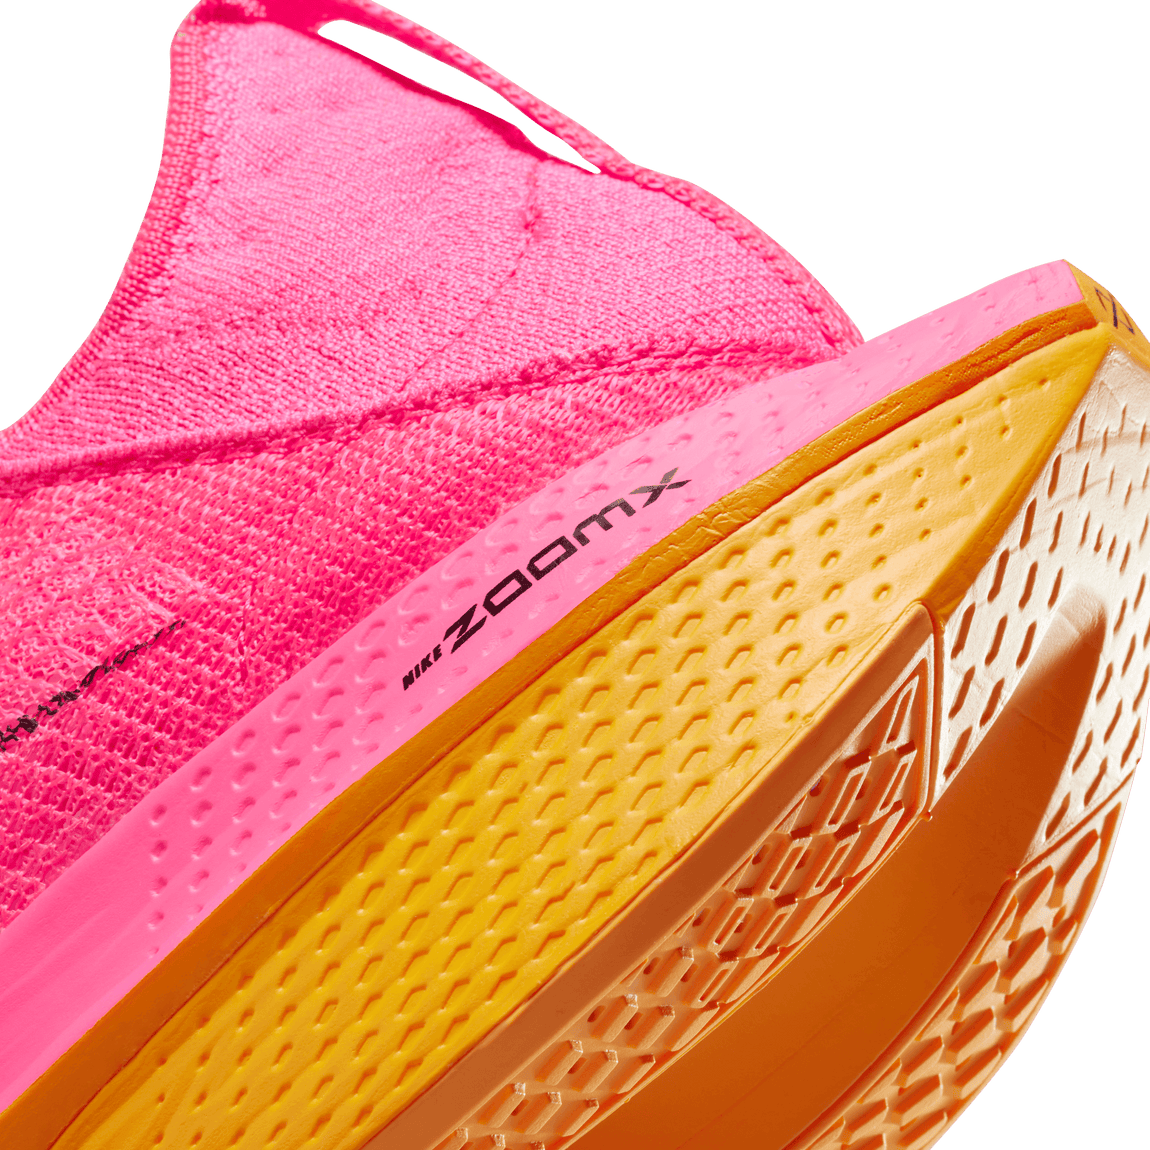 Women's Nike Air Zoom Alphafly Next %2 (Hyperpink/Black-Laser Orange) - Women's Nike Air Zoom Alphafly Next %2 (Hyperpink/Black-Laser Orange) - 